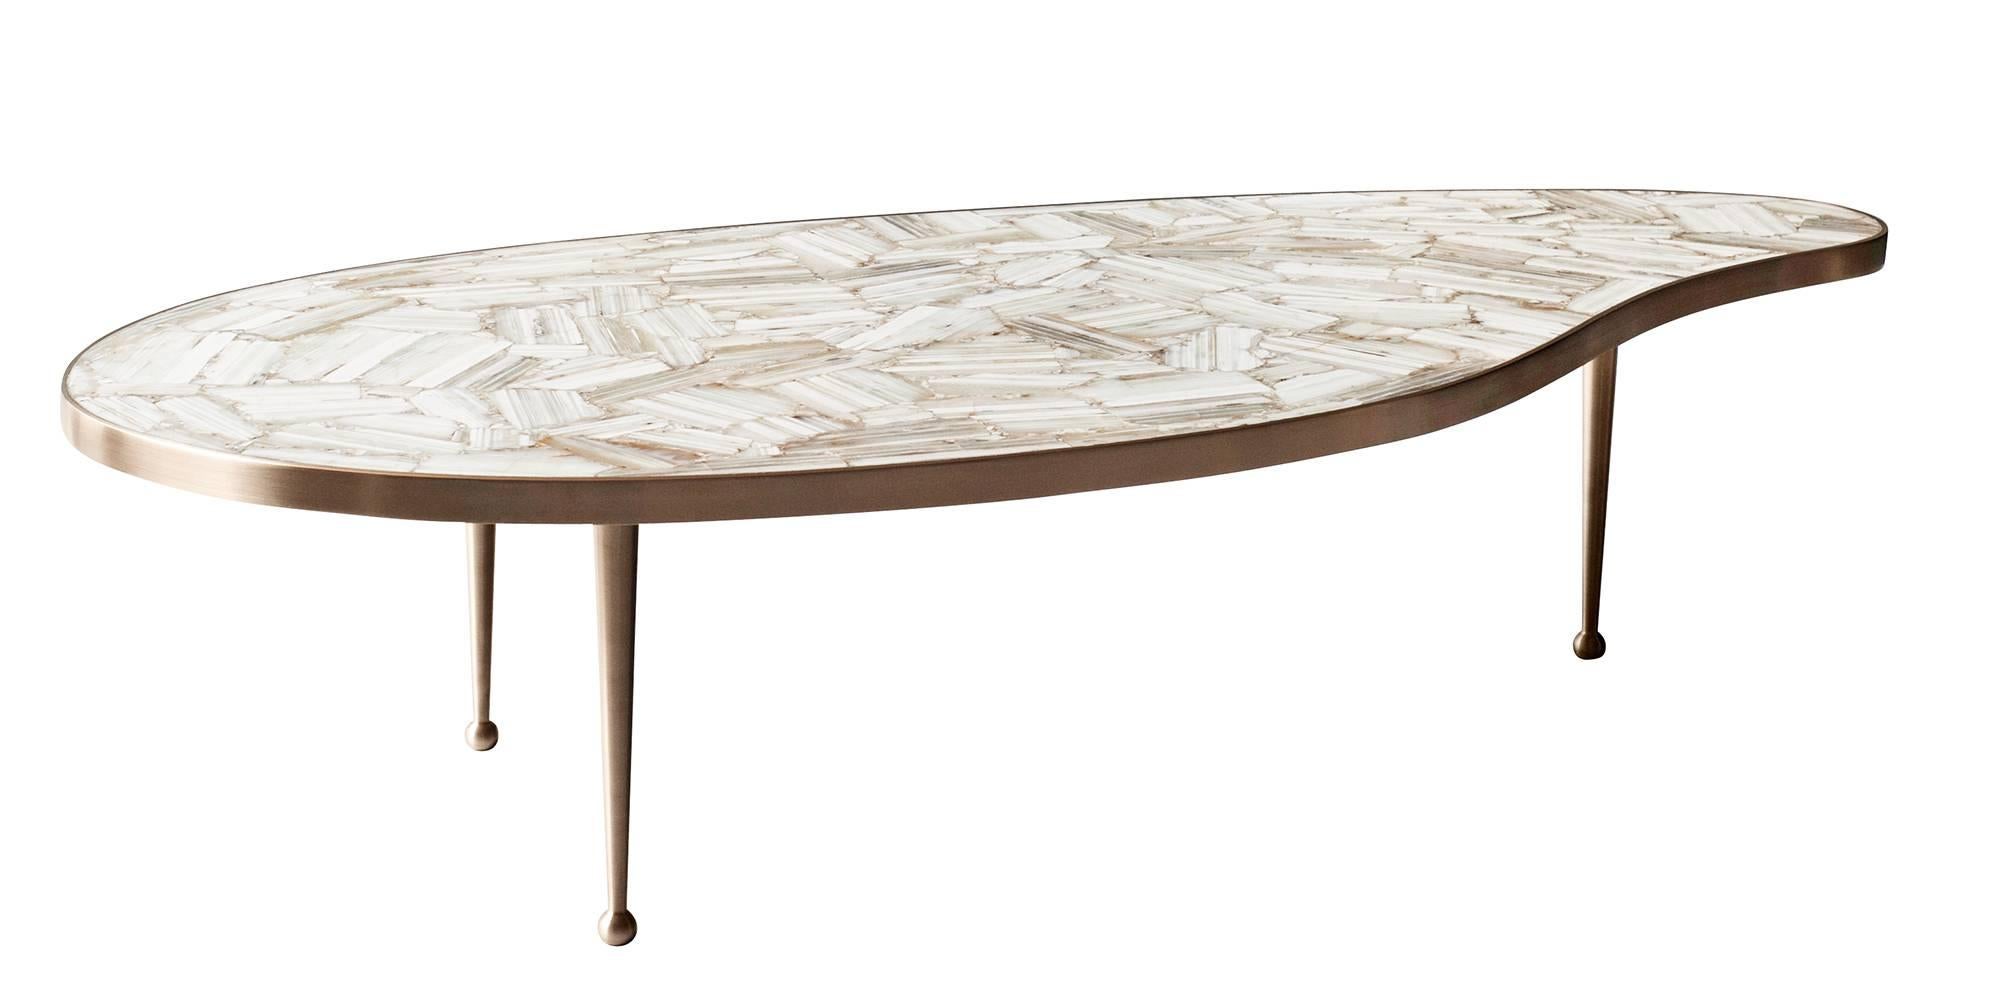 La forme bio-morphique et les lignes épurées de la table basse Lola de DeMuro Das sont inspirées du design du milieu du siècle dernier. Avec un plateau de pierre en agate blanc crème polie et posée à la main, la surface de la table est à la fois